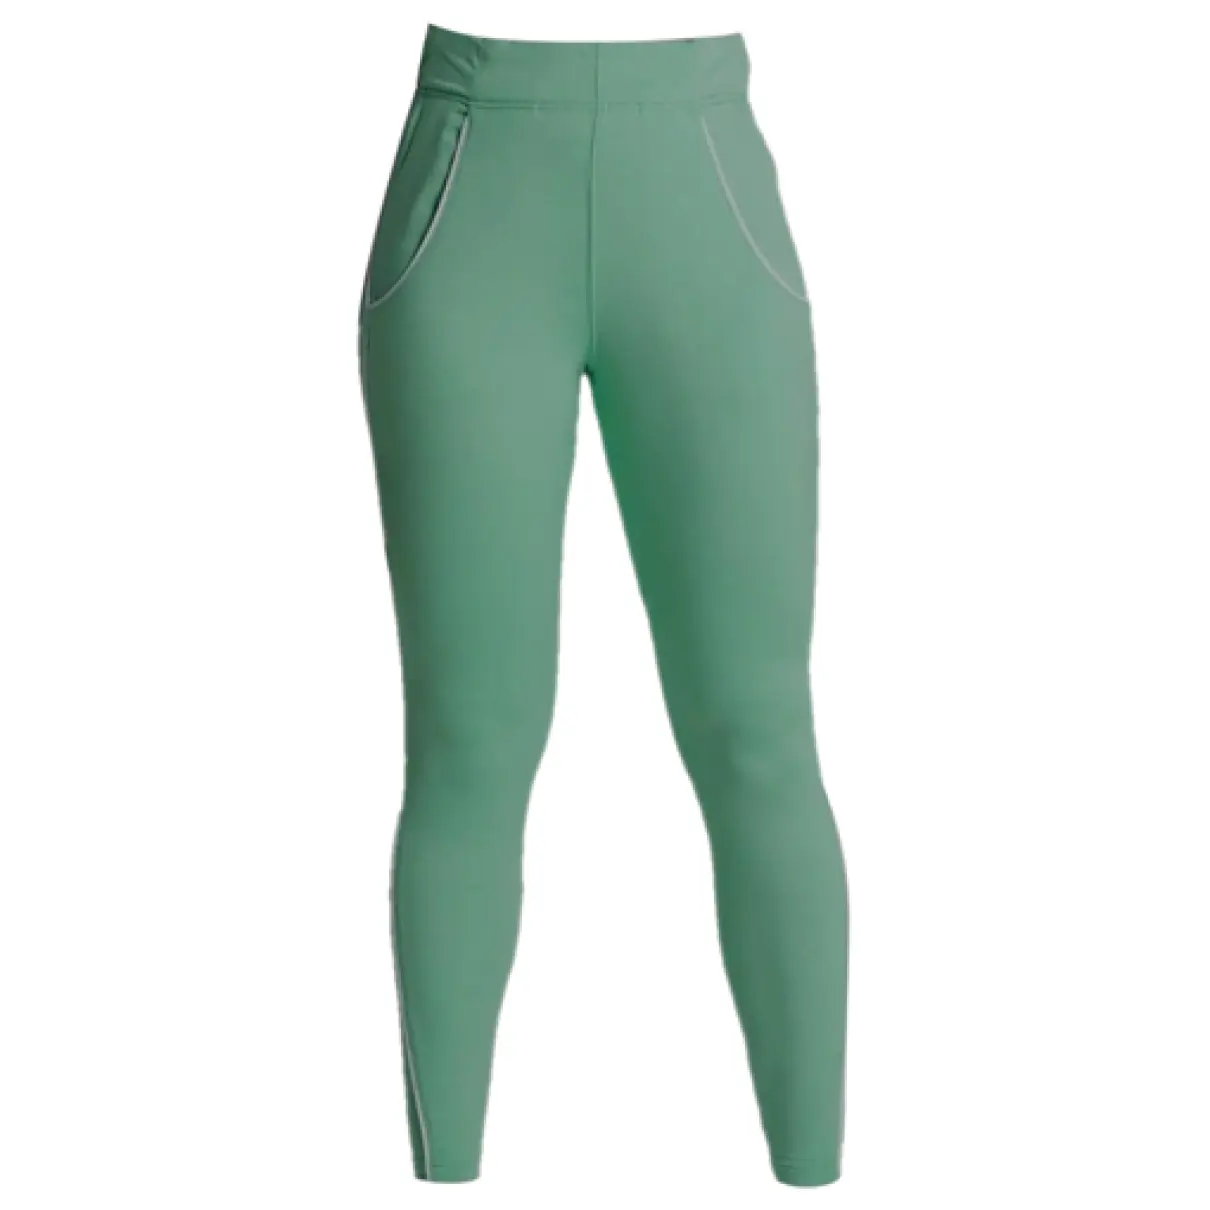 Leggings Gymshark Green size S International in Polyester - 39952319